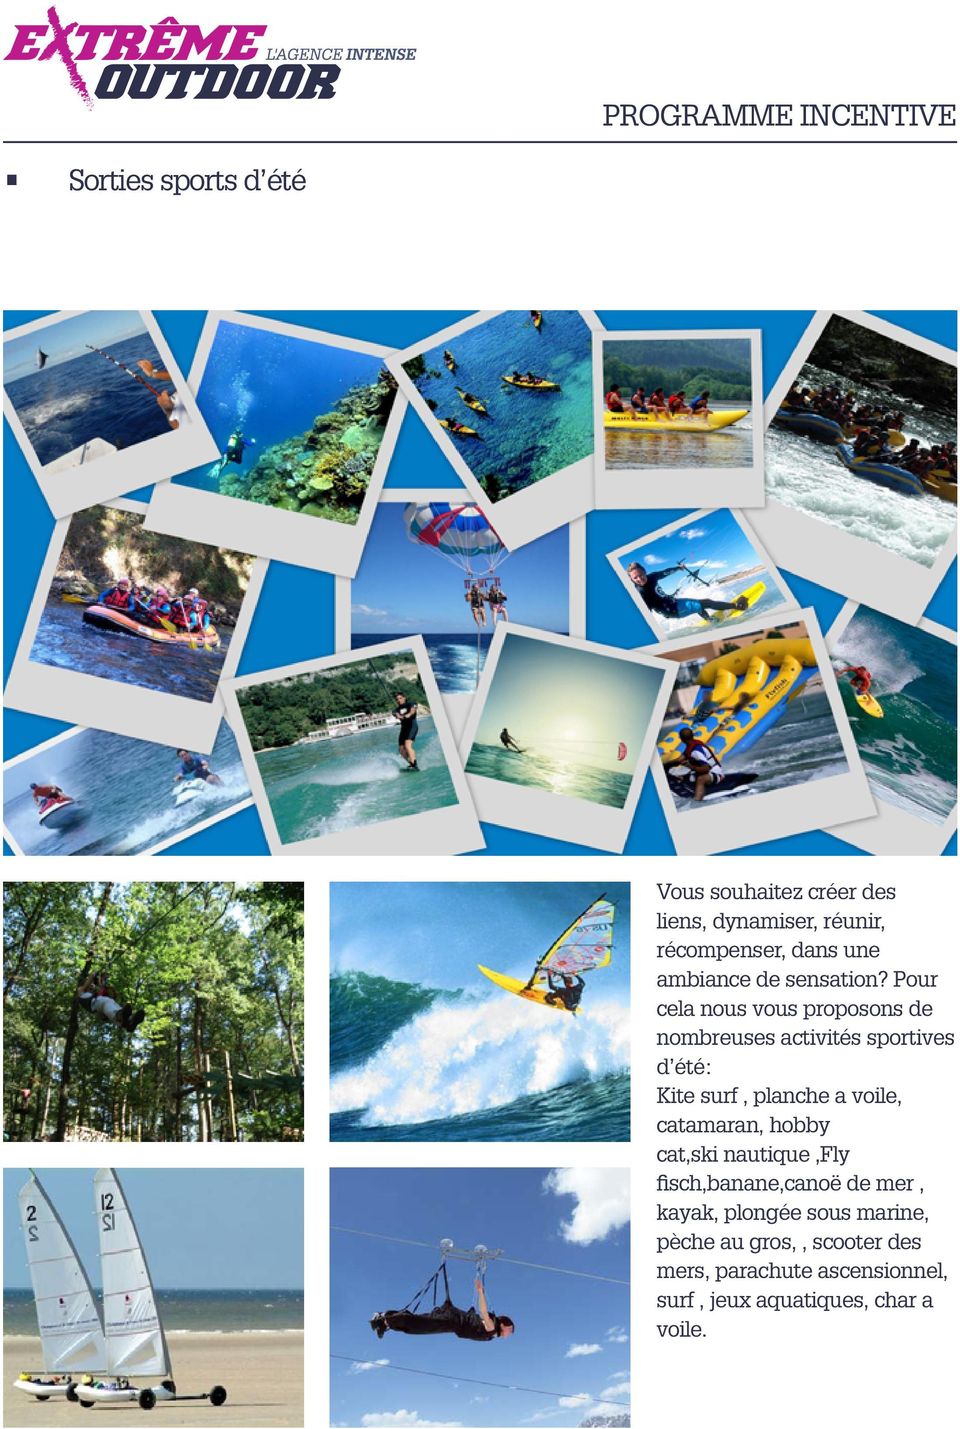 Pour cela nous vous proposons de nombreuses activités sportives d été: Kite surf, planche a voile,